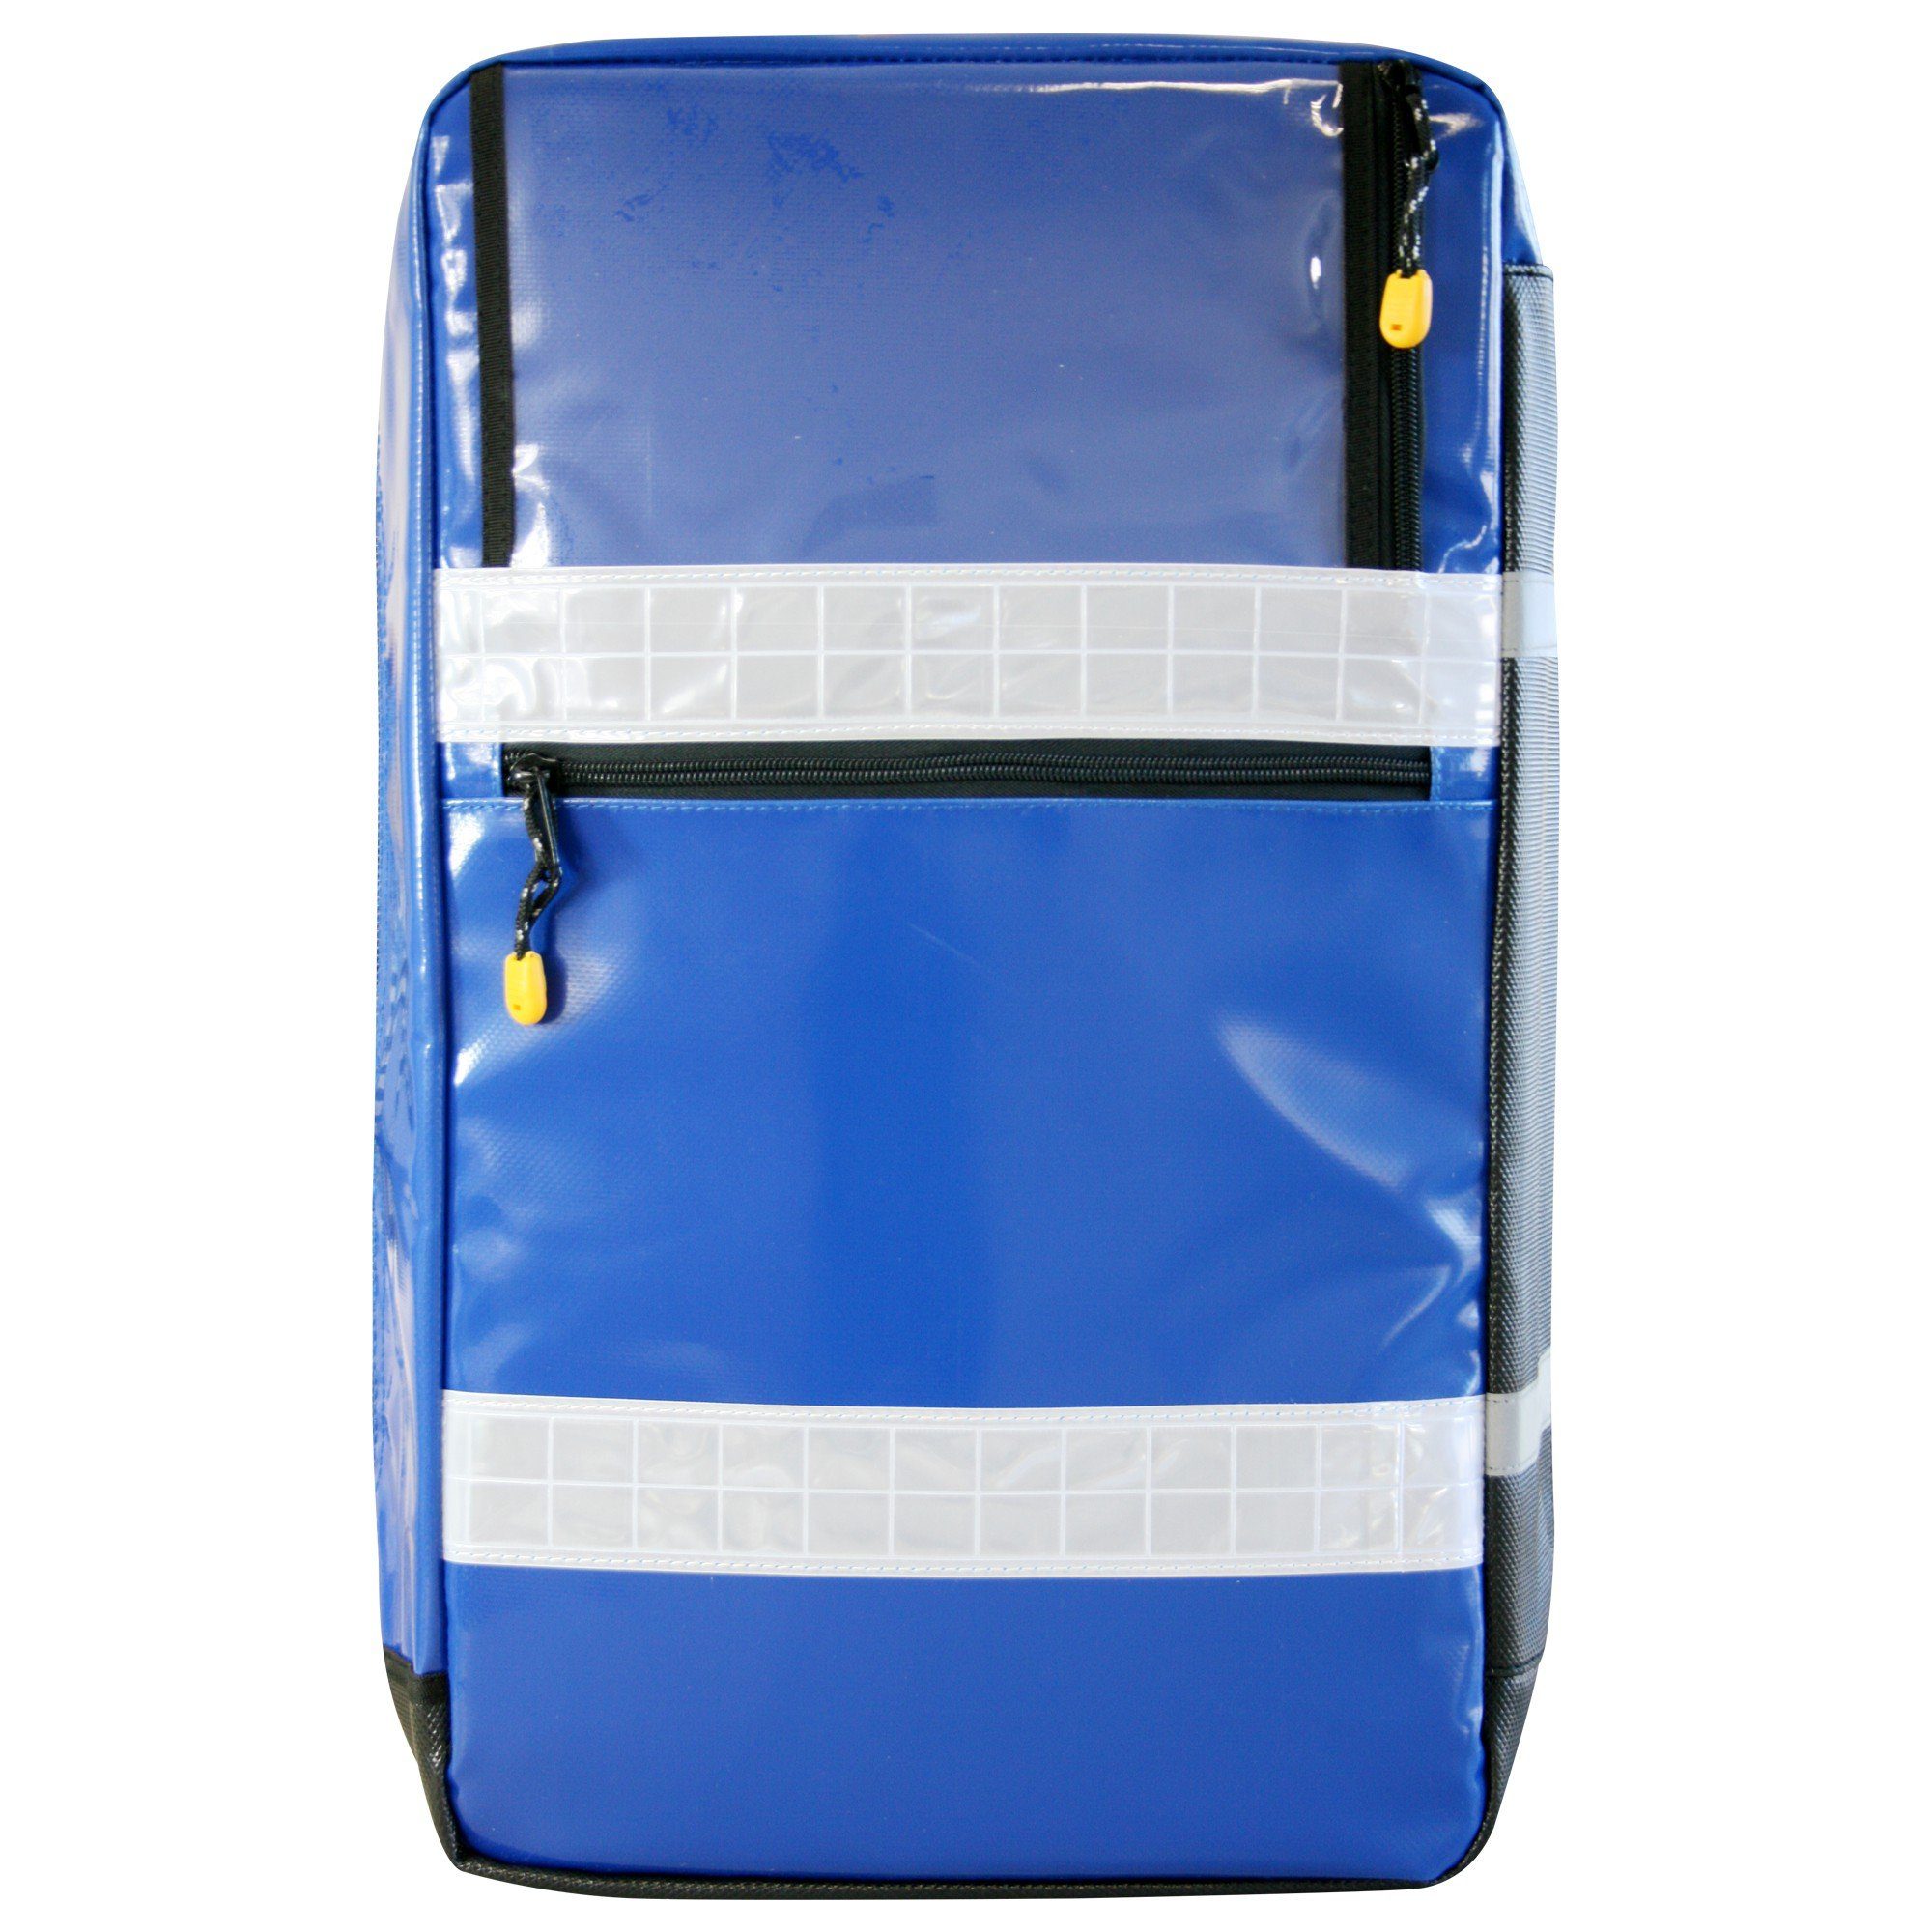 L blau 13169:2021-11 DIN Arzttasche gefüllt SANISMART MEDICUS mit Notfallrucksack Plane